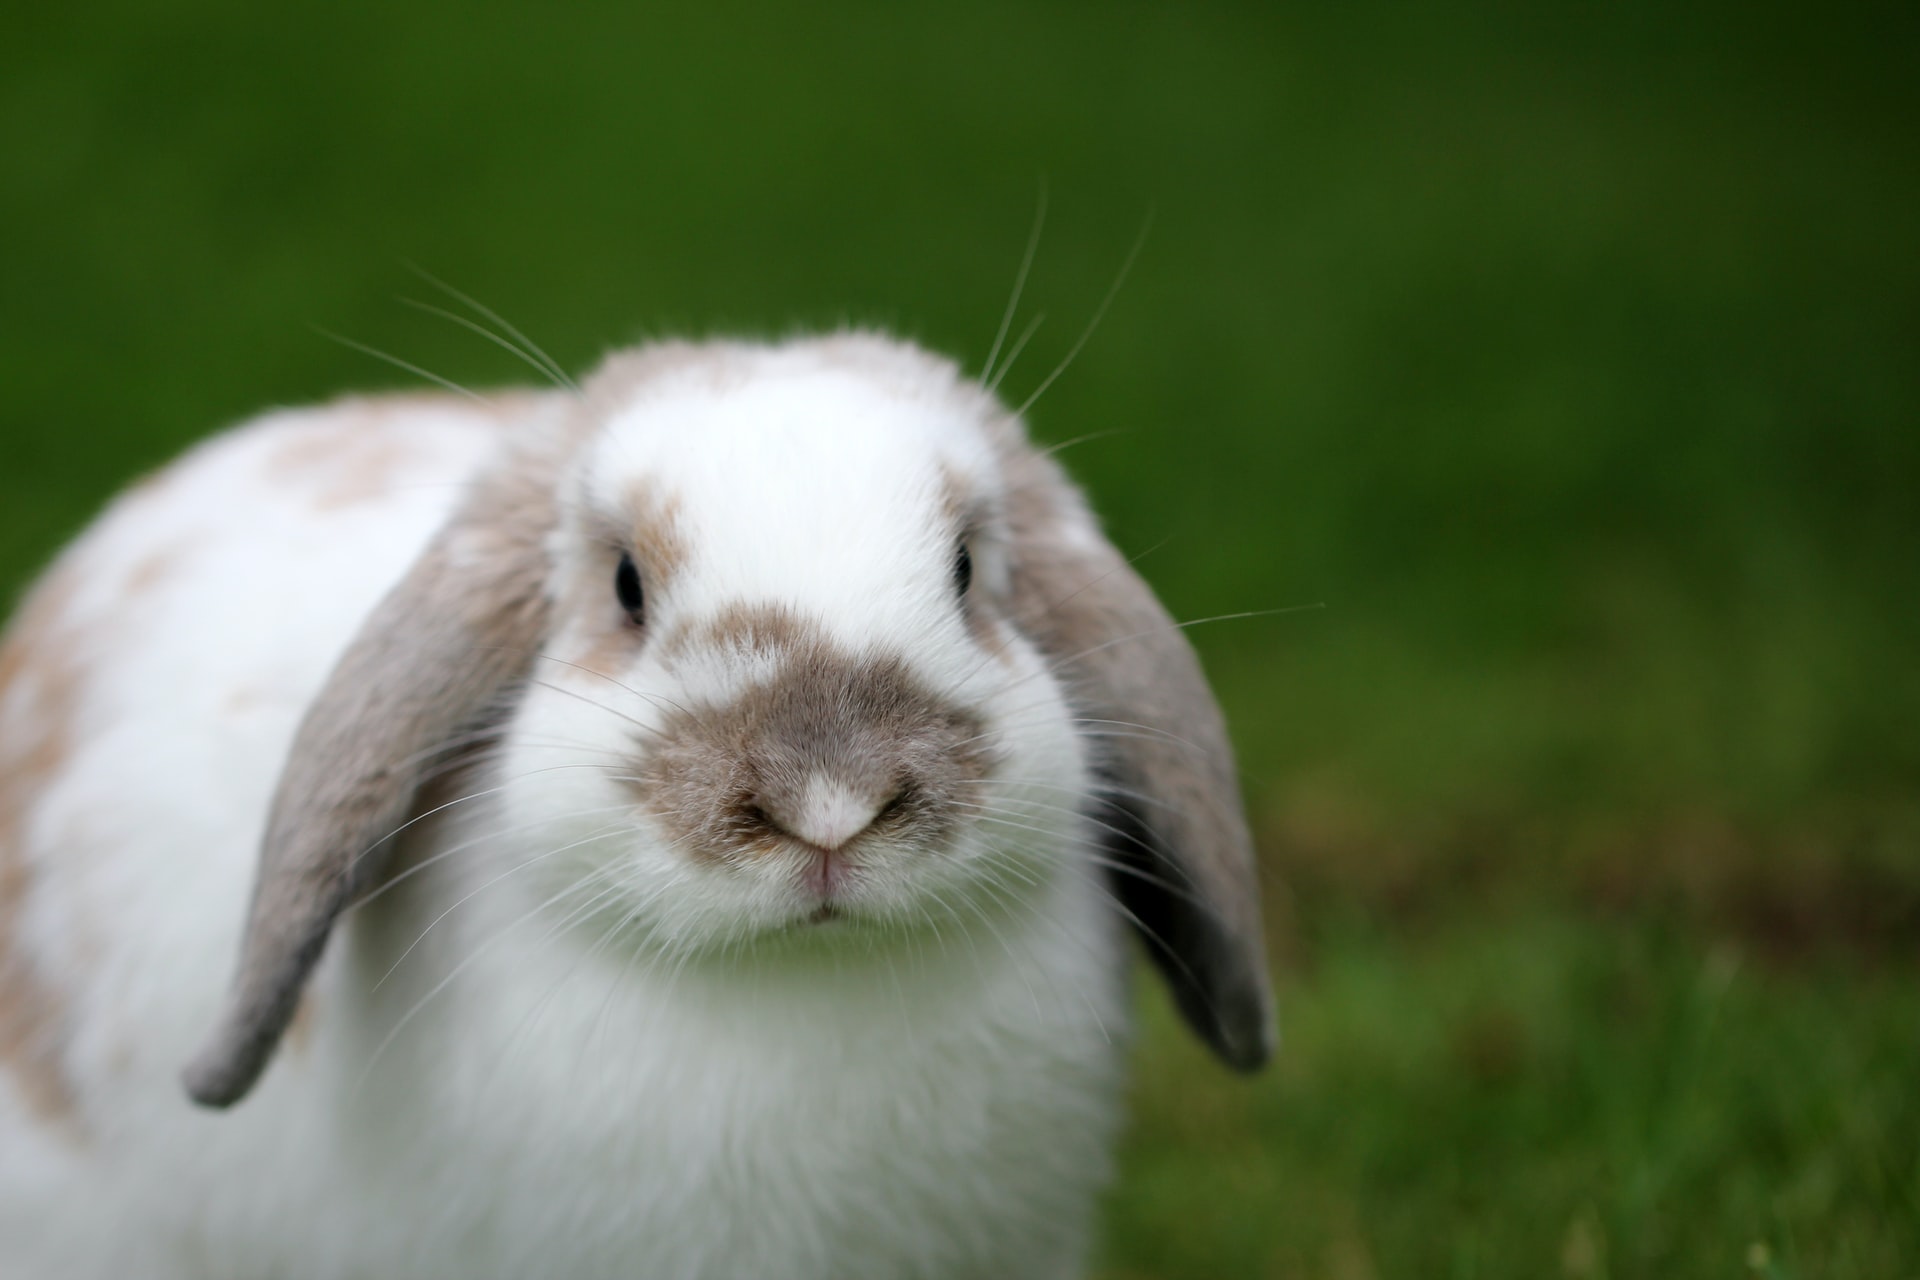 Kaninchen grunzen wenn sie sich bedroht fühlen